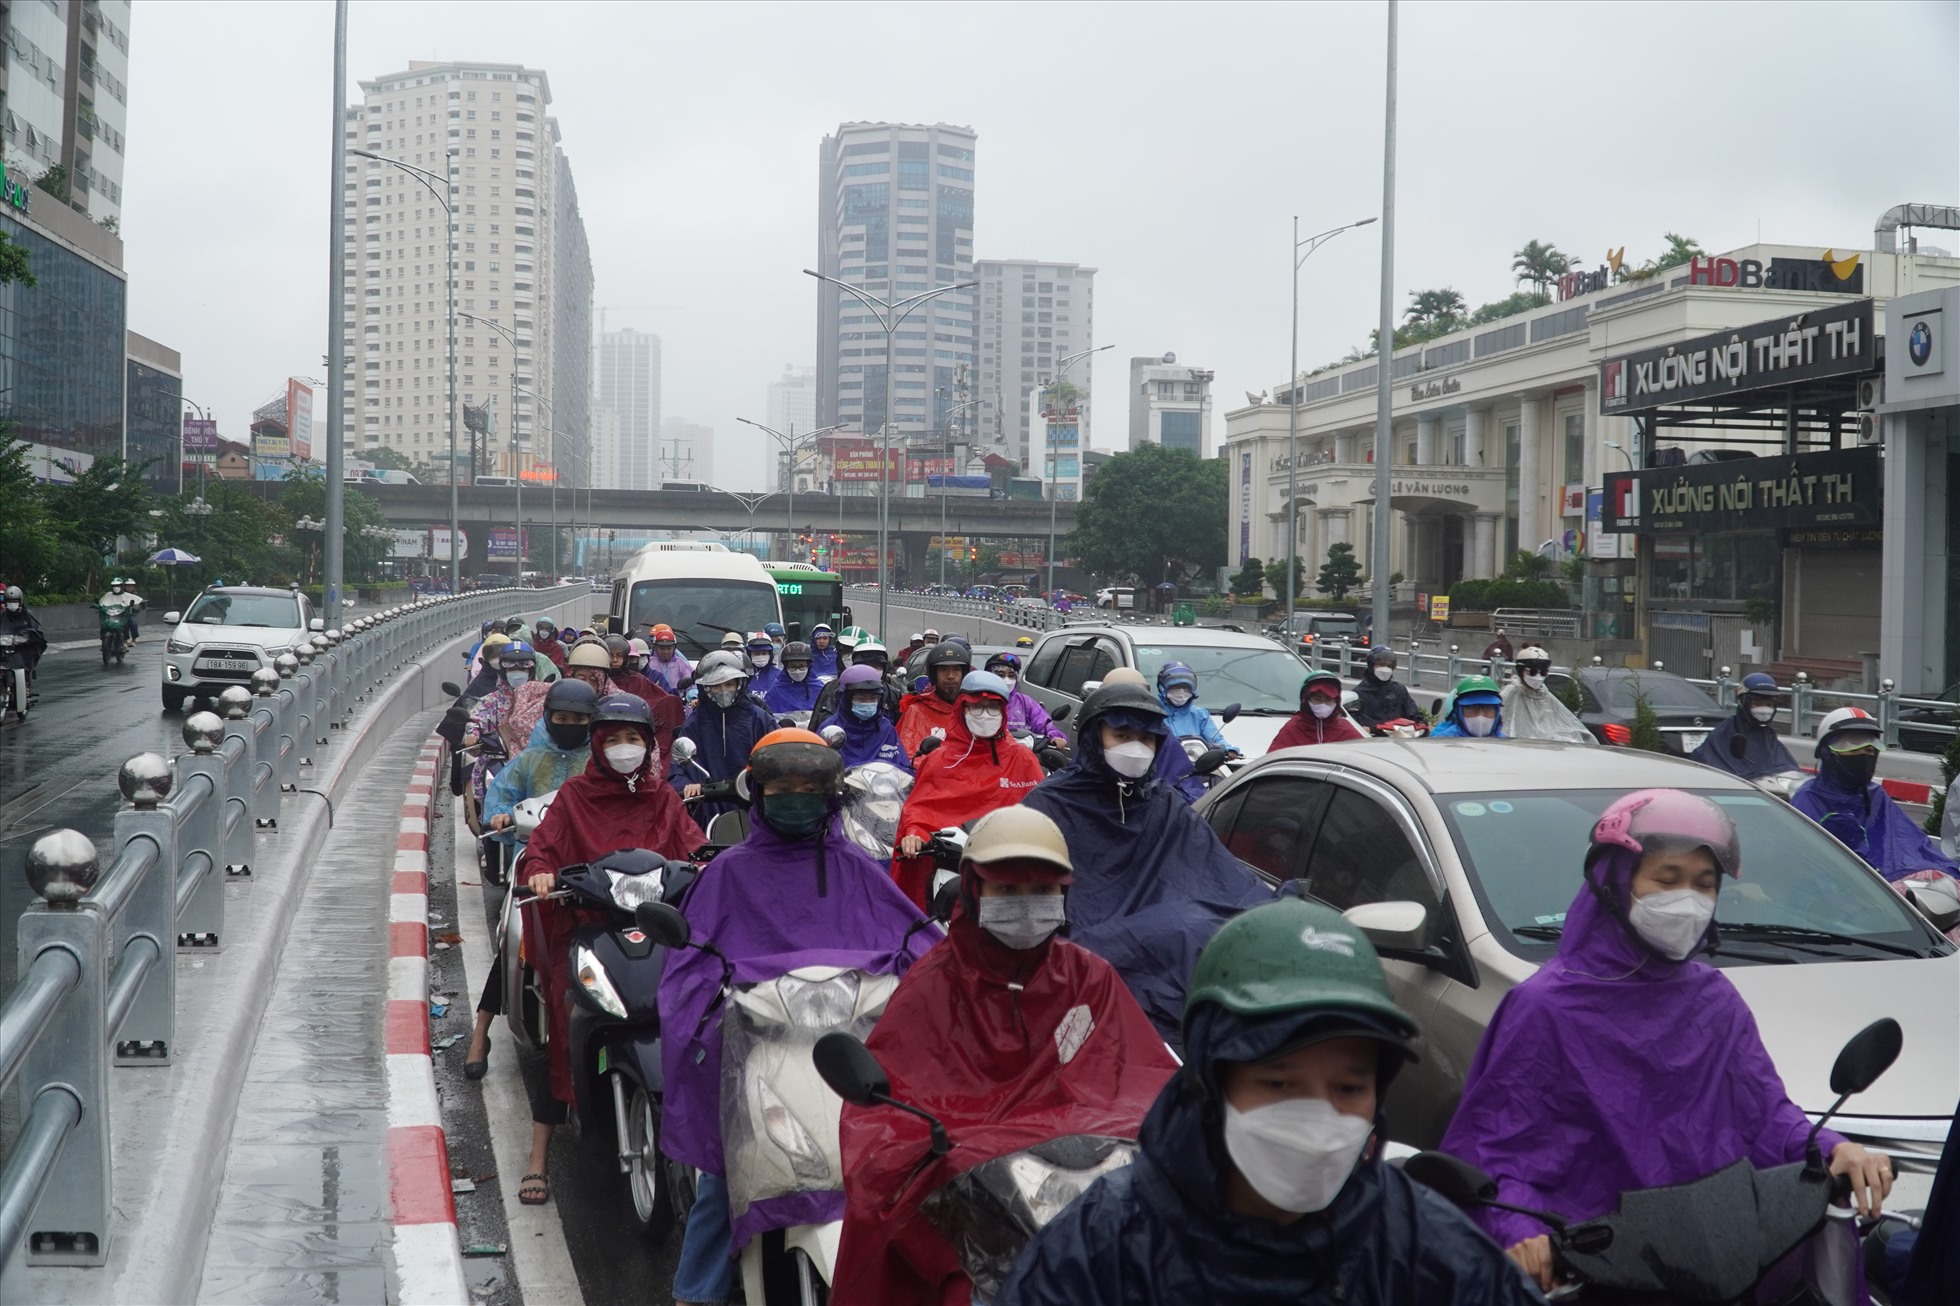 Hầm chui Lê Văn Lương hôm nay cũng trong tình trạng ùn tắc kéo dài, theo hướng xe đi vào nội đô.